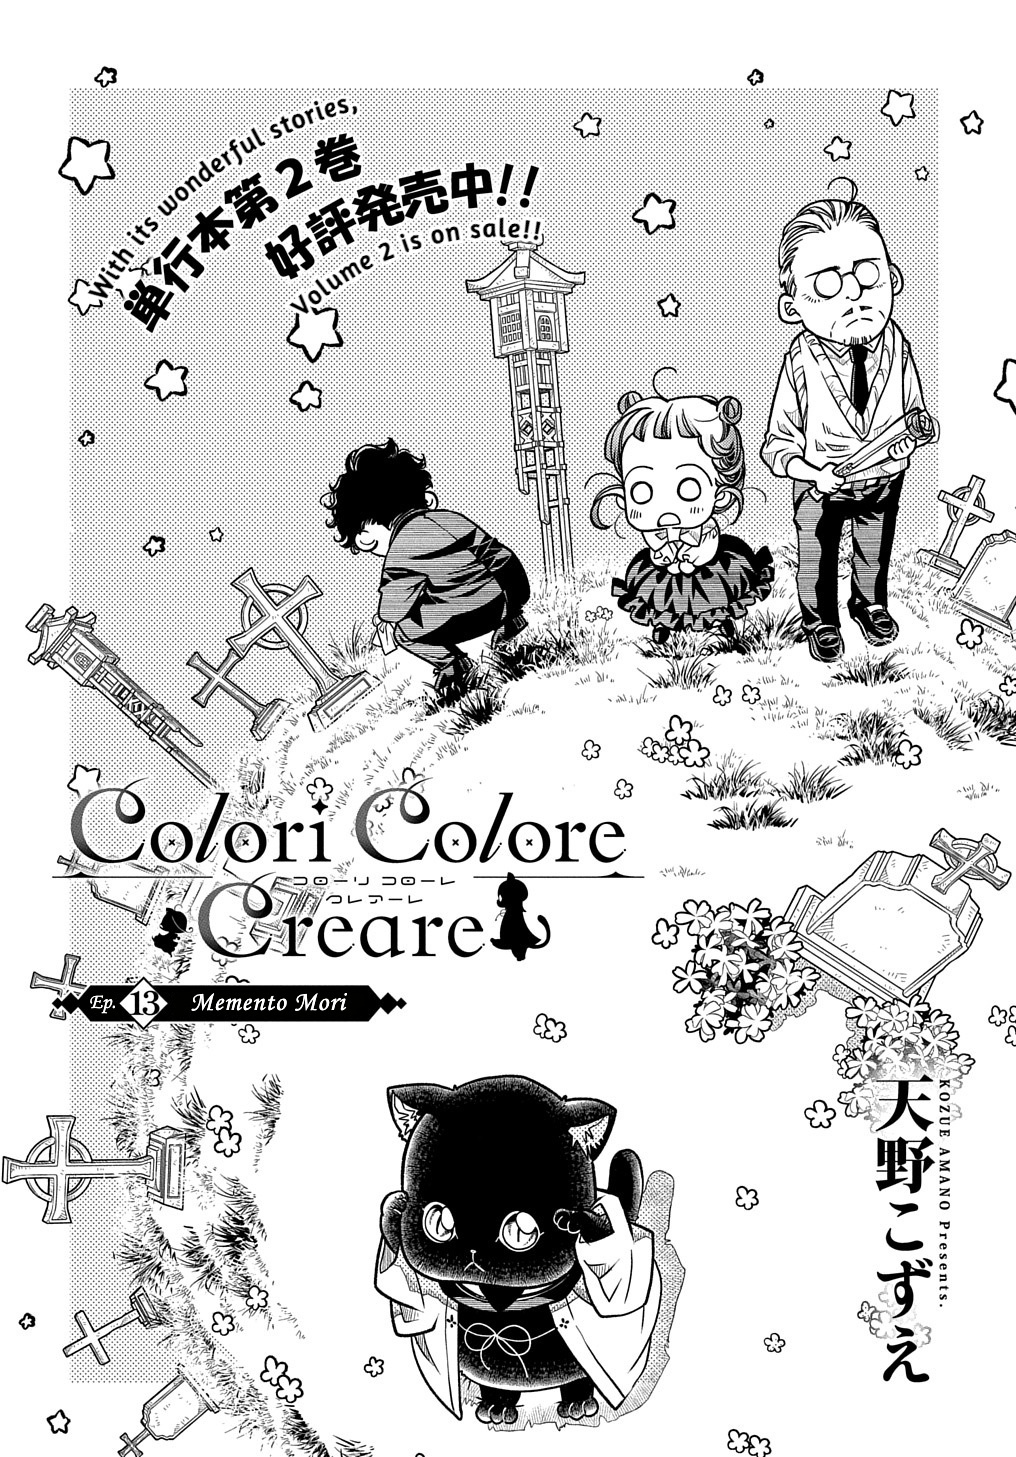 Colori Colore Creare Vol.3 Chapter 13: Memento Mori - Picture 2